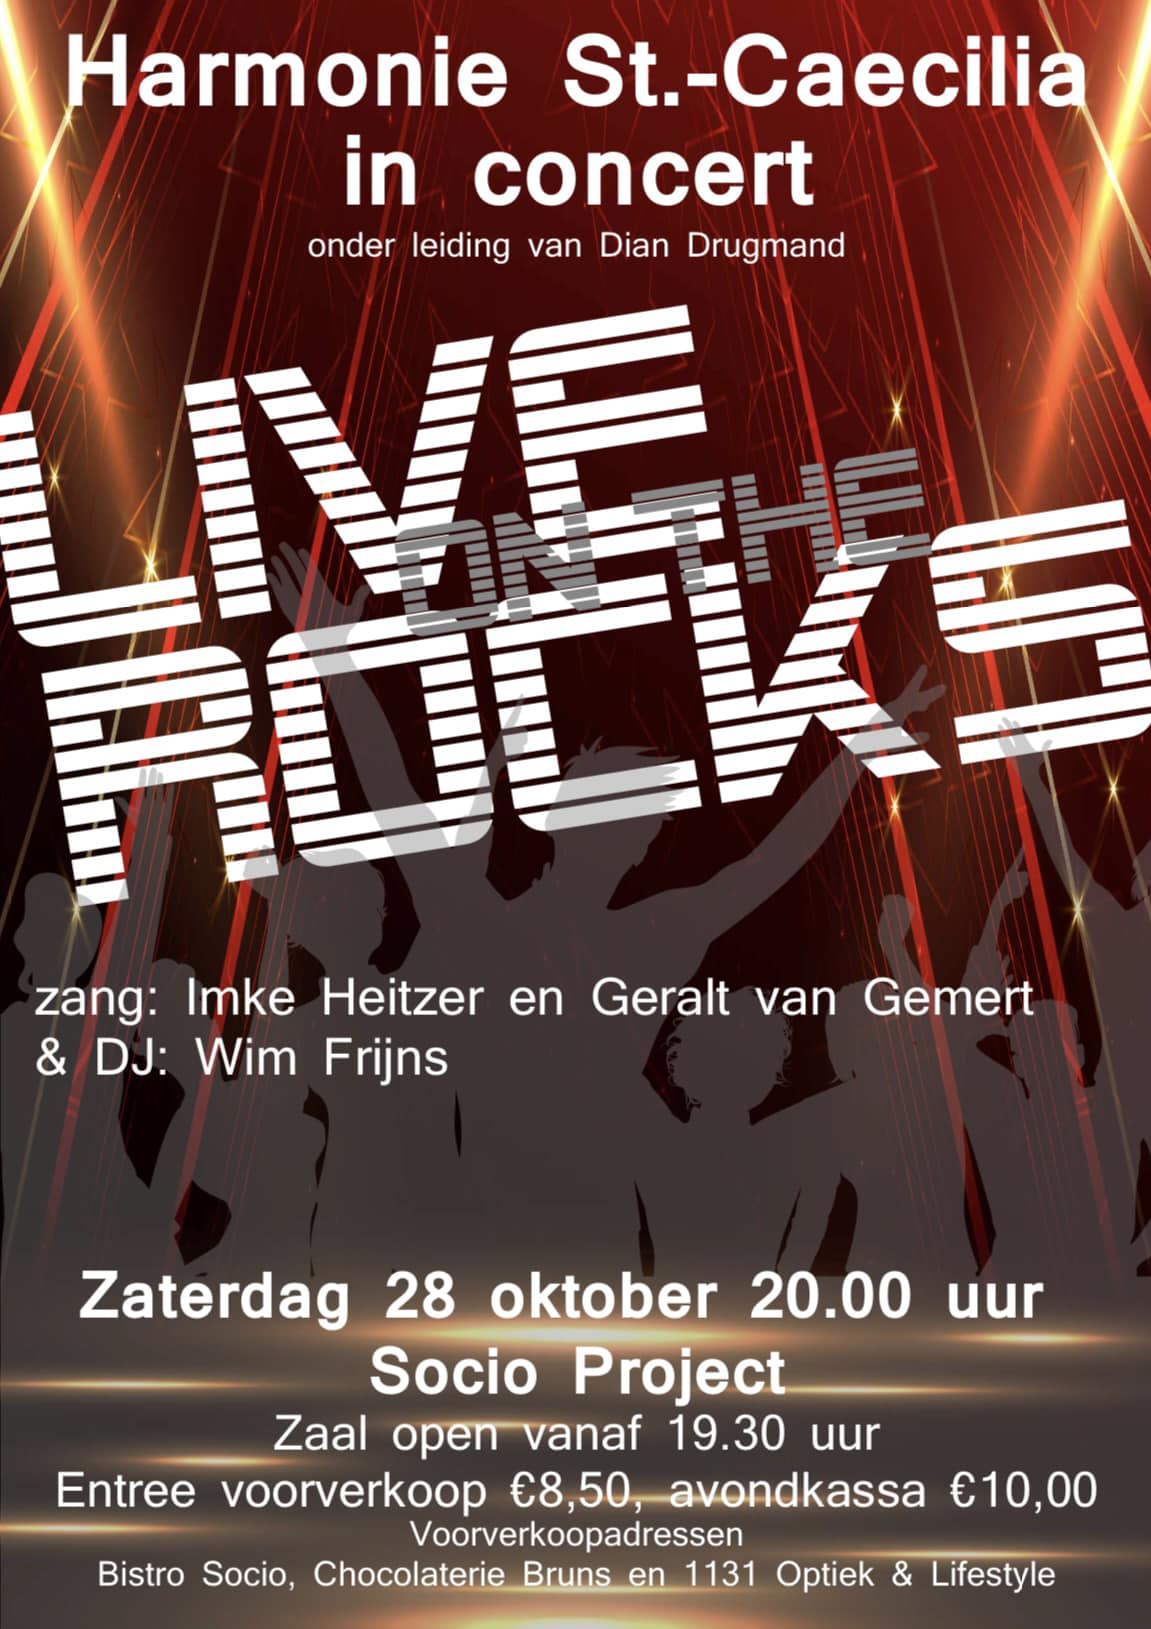 Affiche pop/rock concert